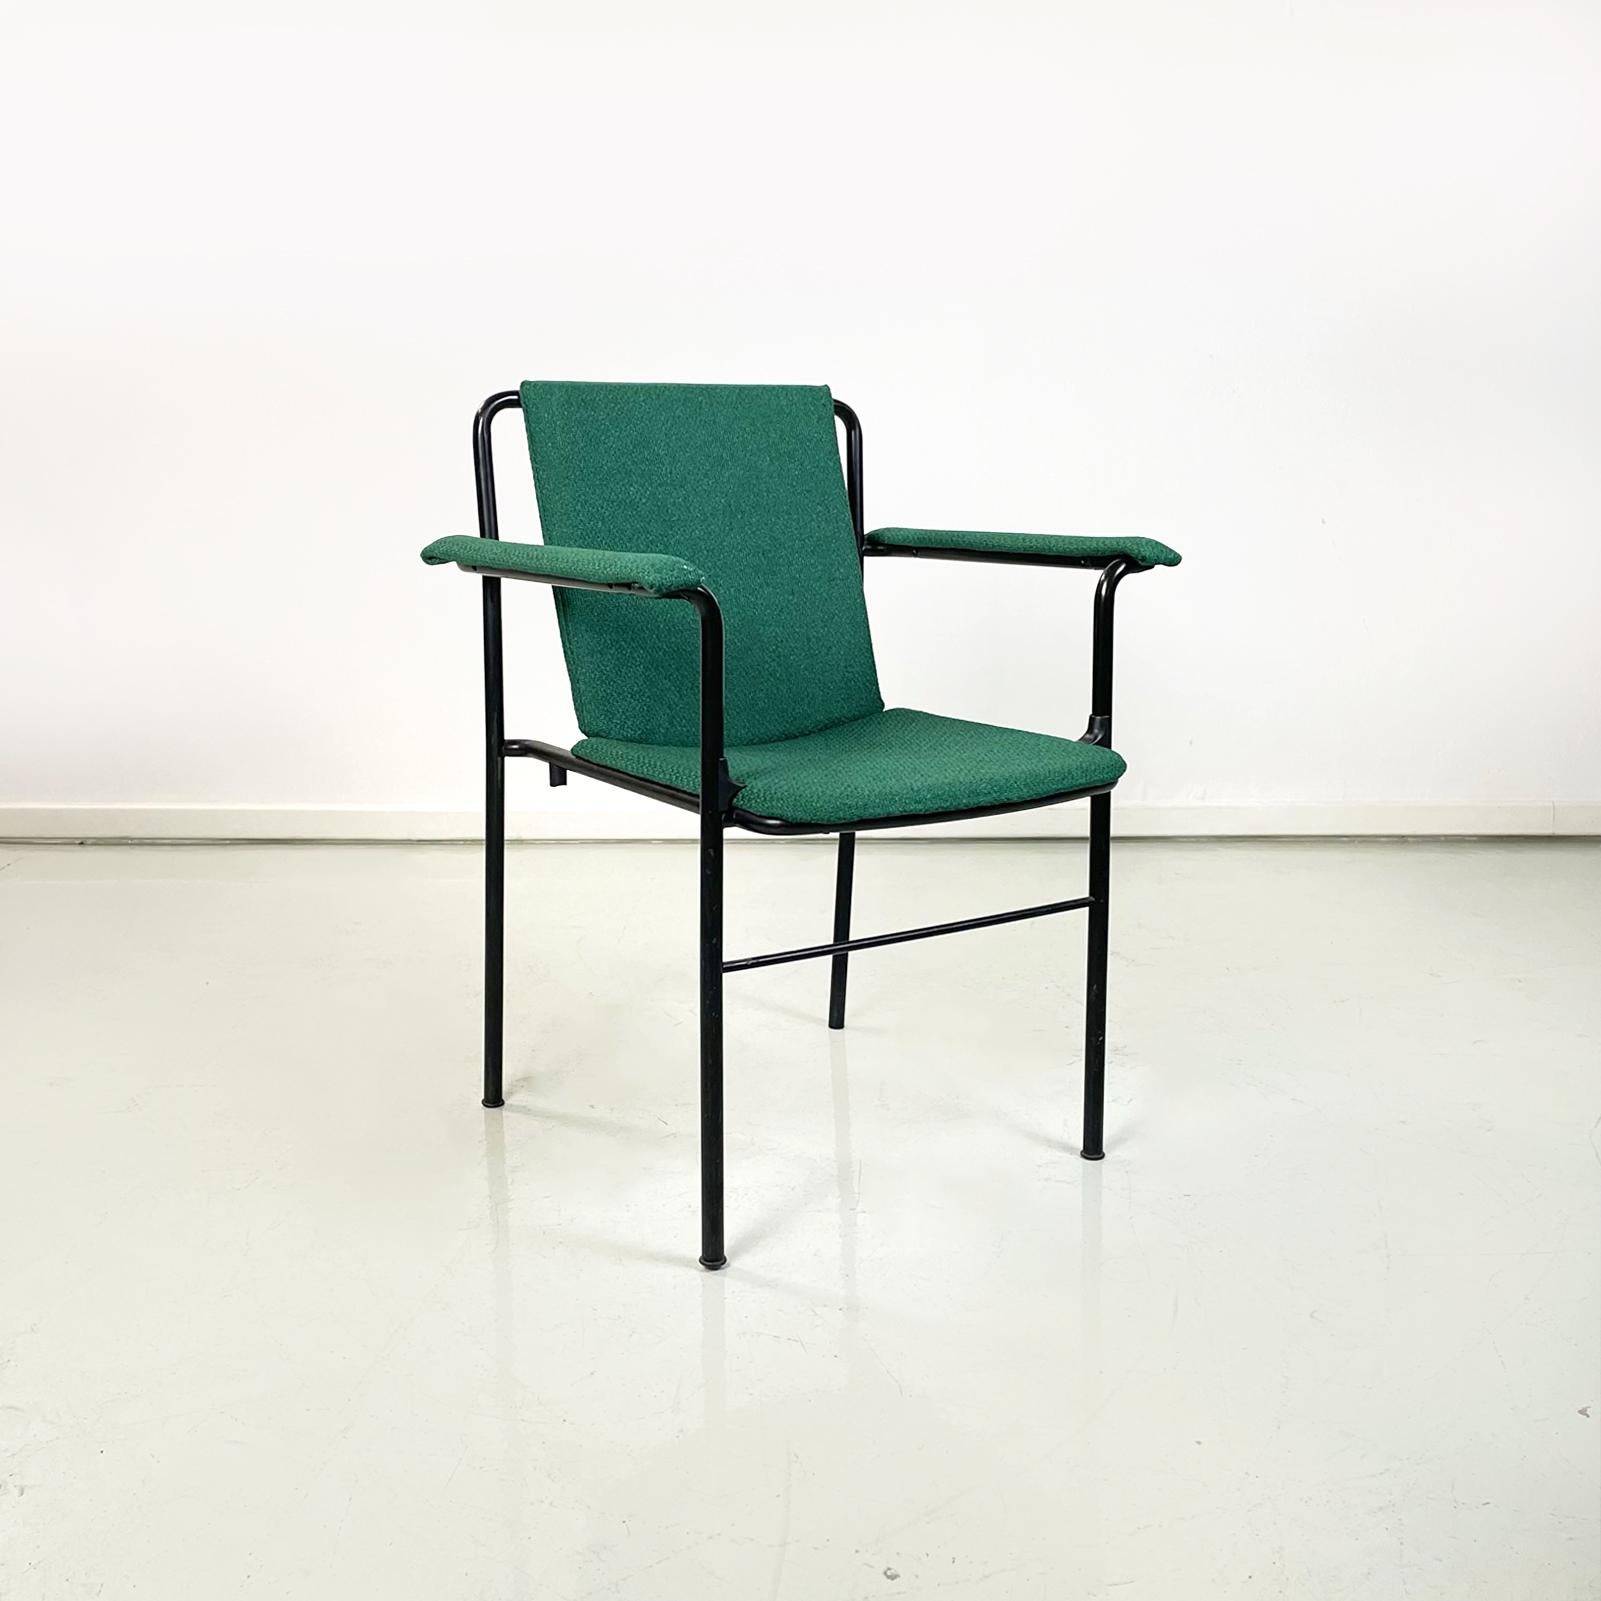 Fauteuils modernes italiens fauteuil de cinéma par Mario Marenco pour Poltrona Frau, 1980
Ensemble de 6 fauteuils mod. Fauteuil Movie avec assise, accoudoirs et dossier rectangulaires, recouvert de tissu vert forêt. Le dossier est légèrement incliné